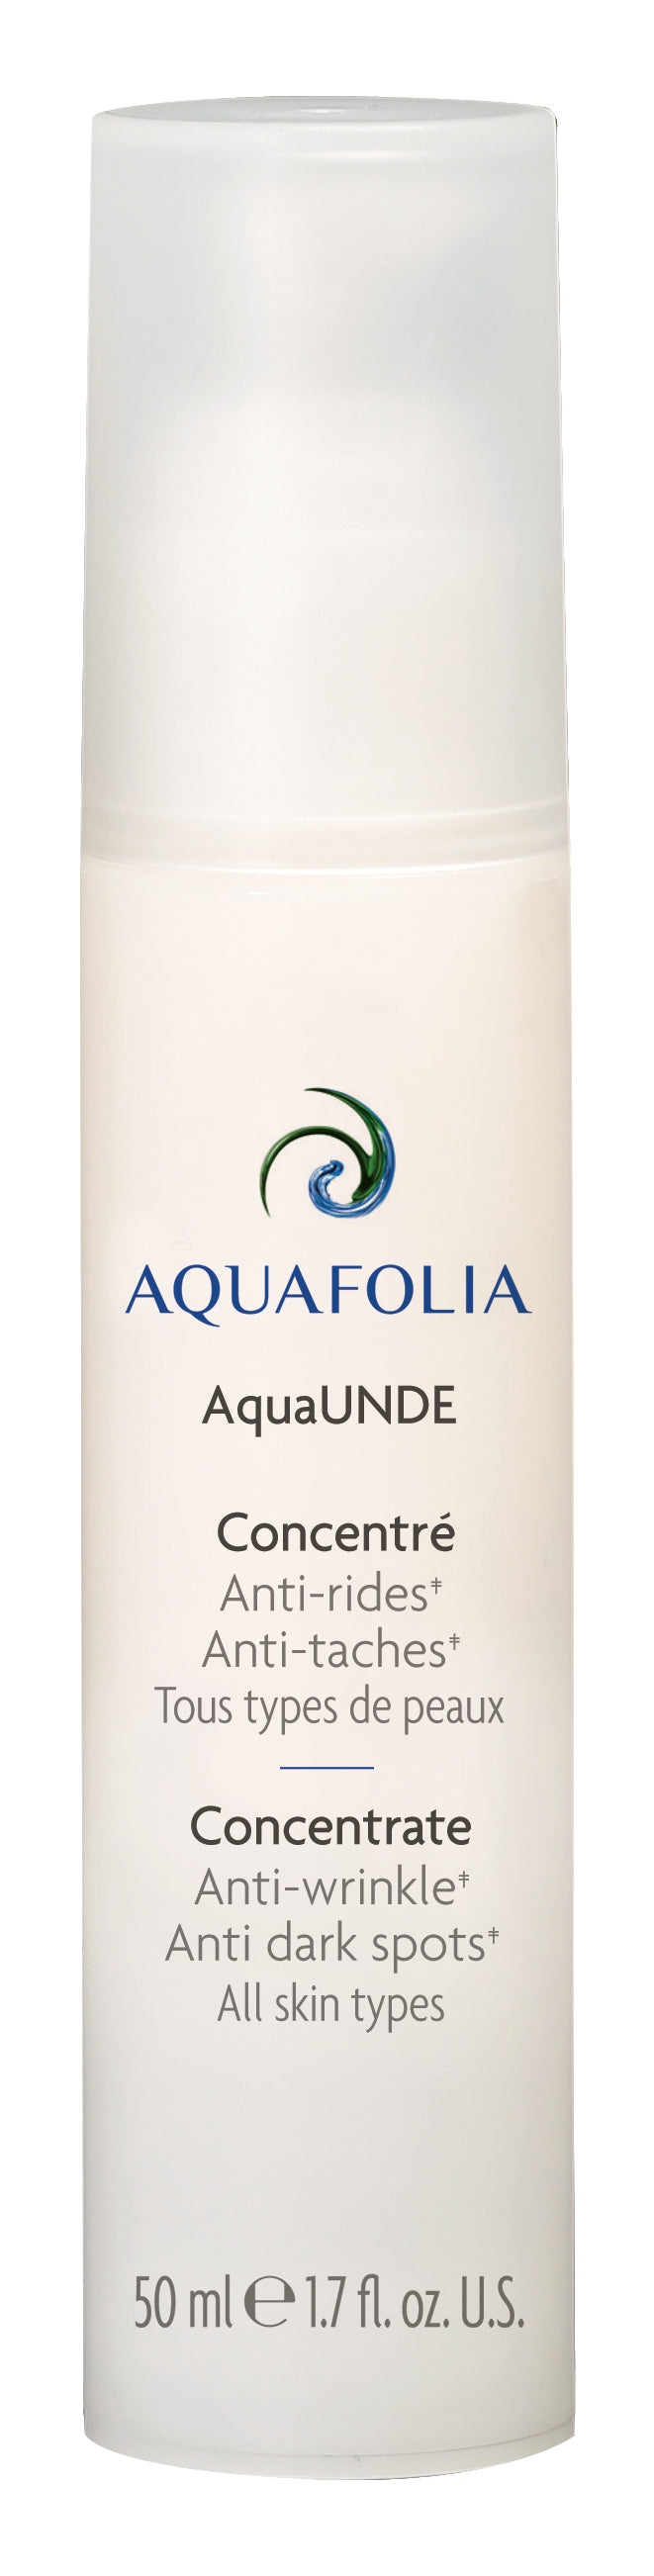 Aquafolia- Concentré AquaUNDE- Concept AquaUNDE